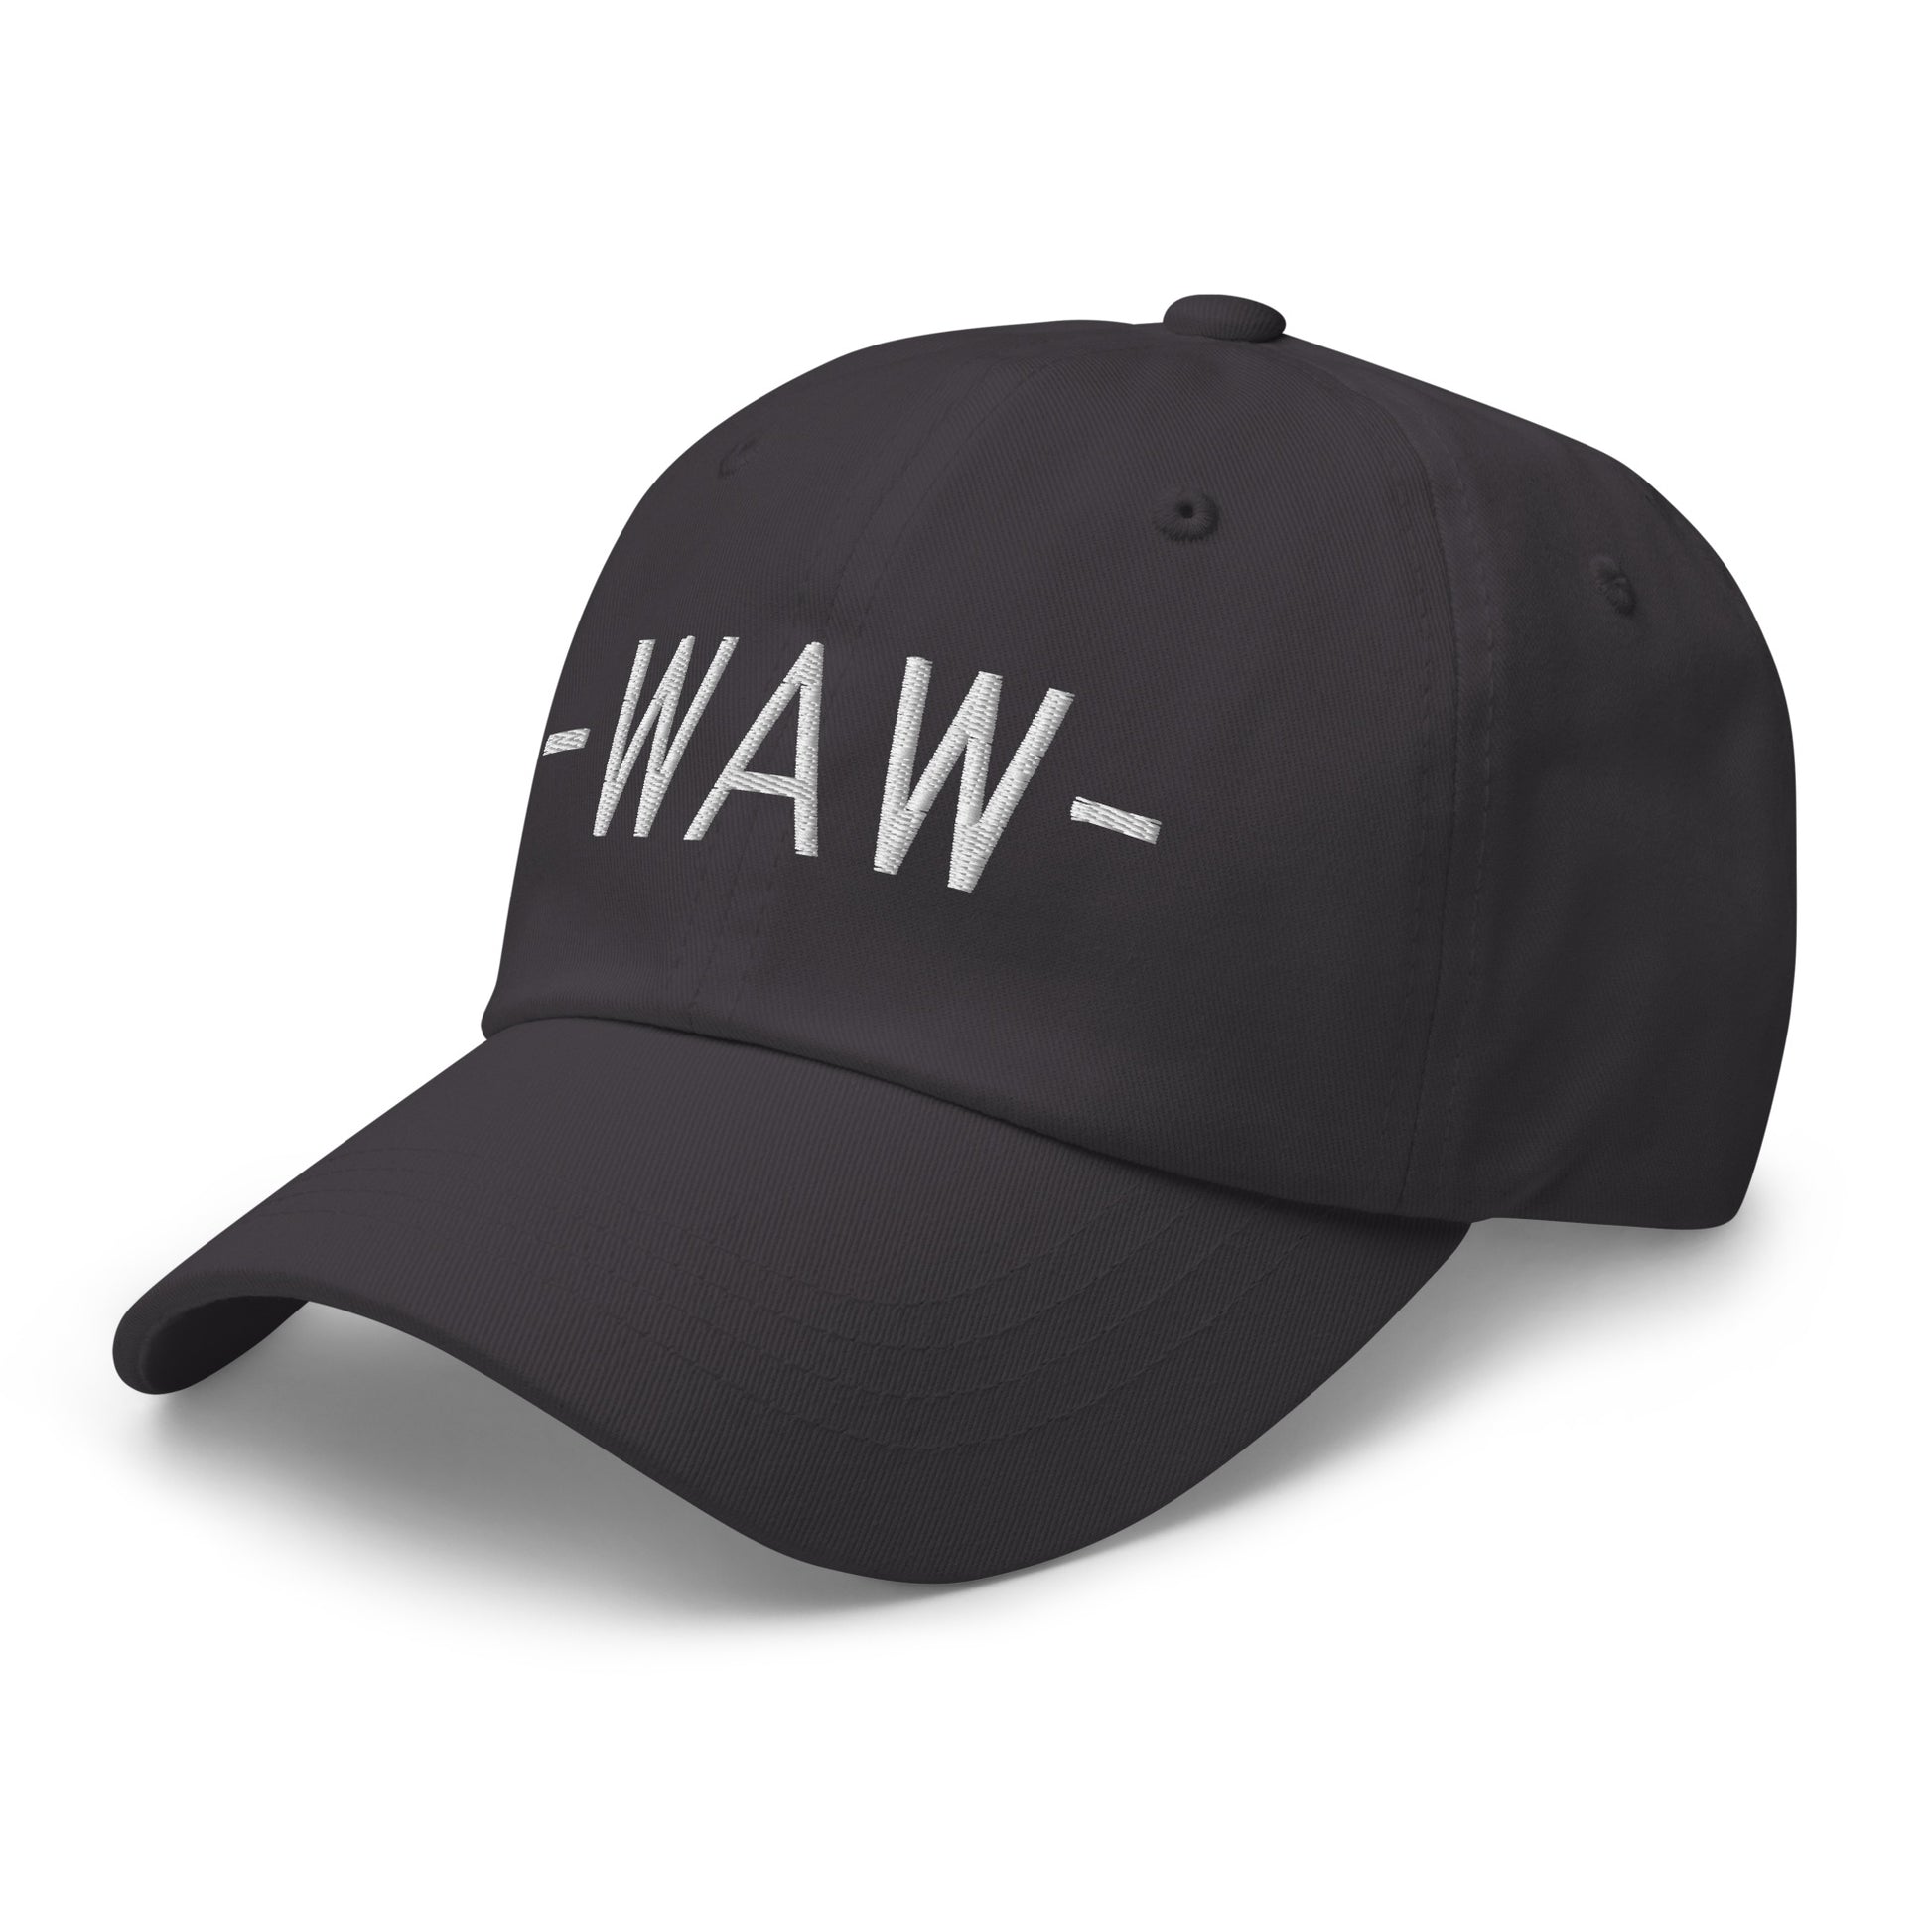 Souvenir Baseball Cap - White • WAW Warsaw • YHM Designs - Image 20